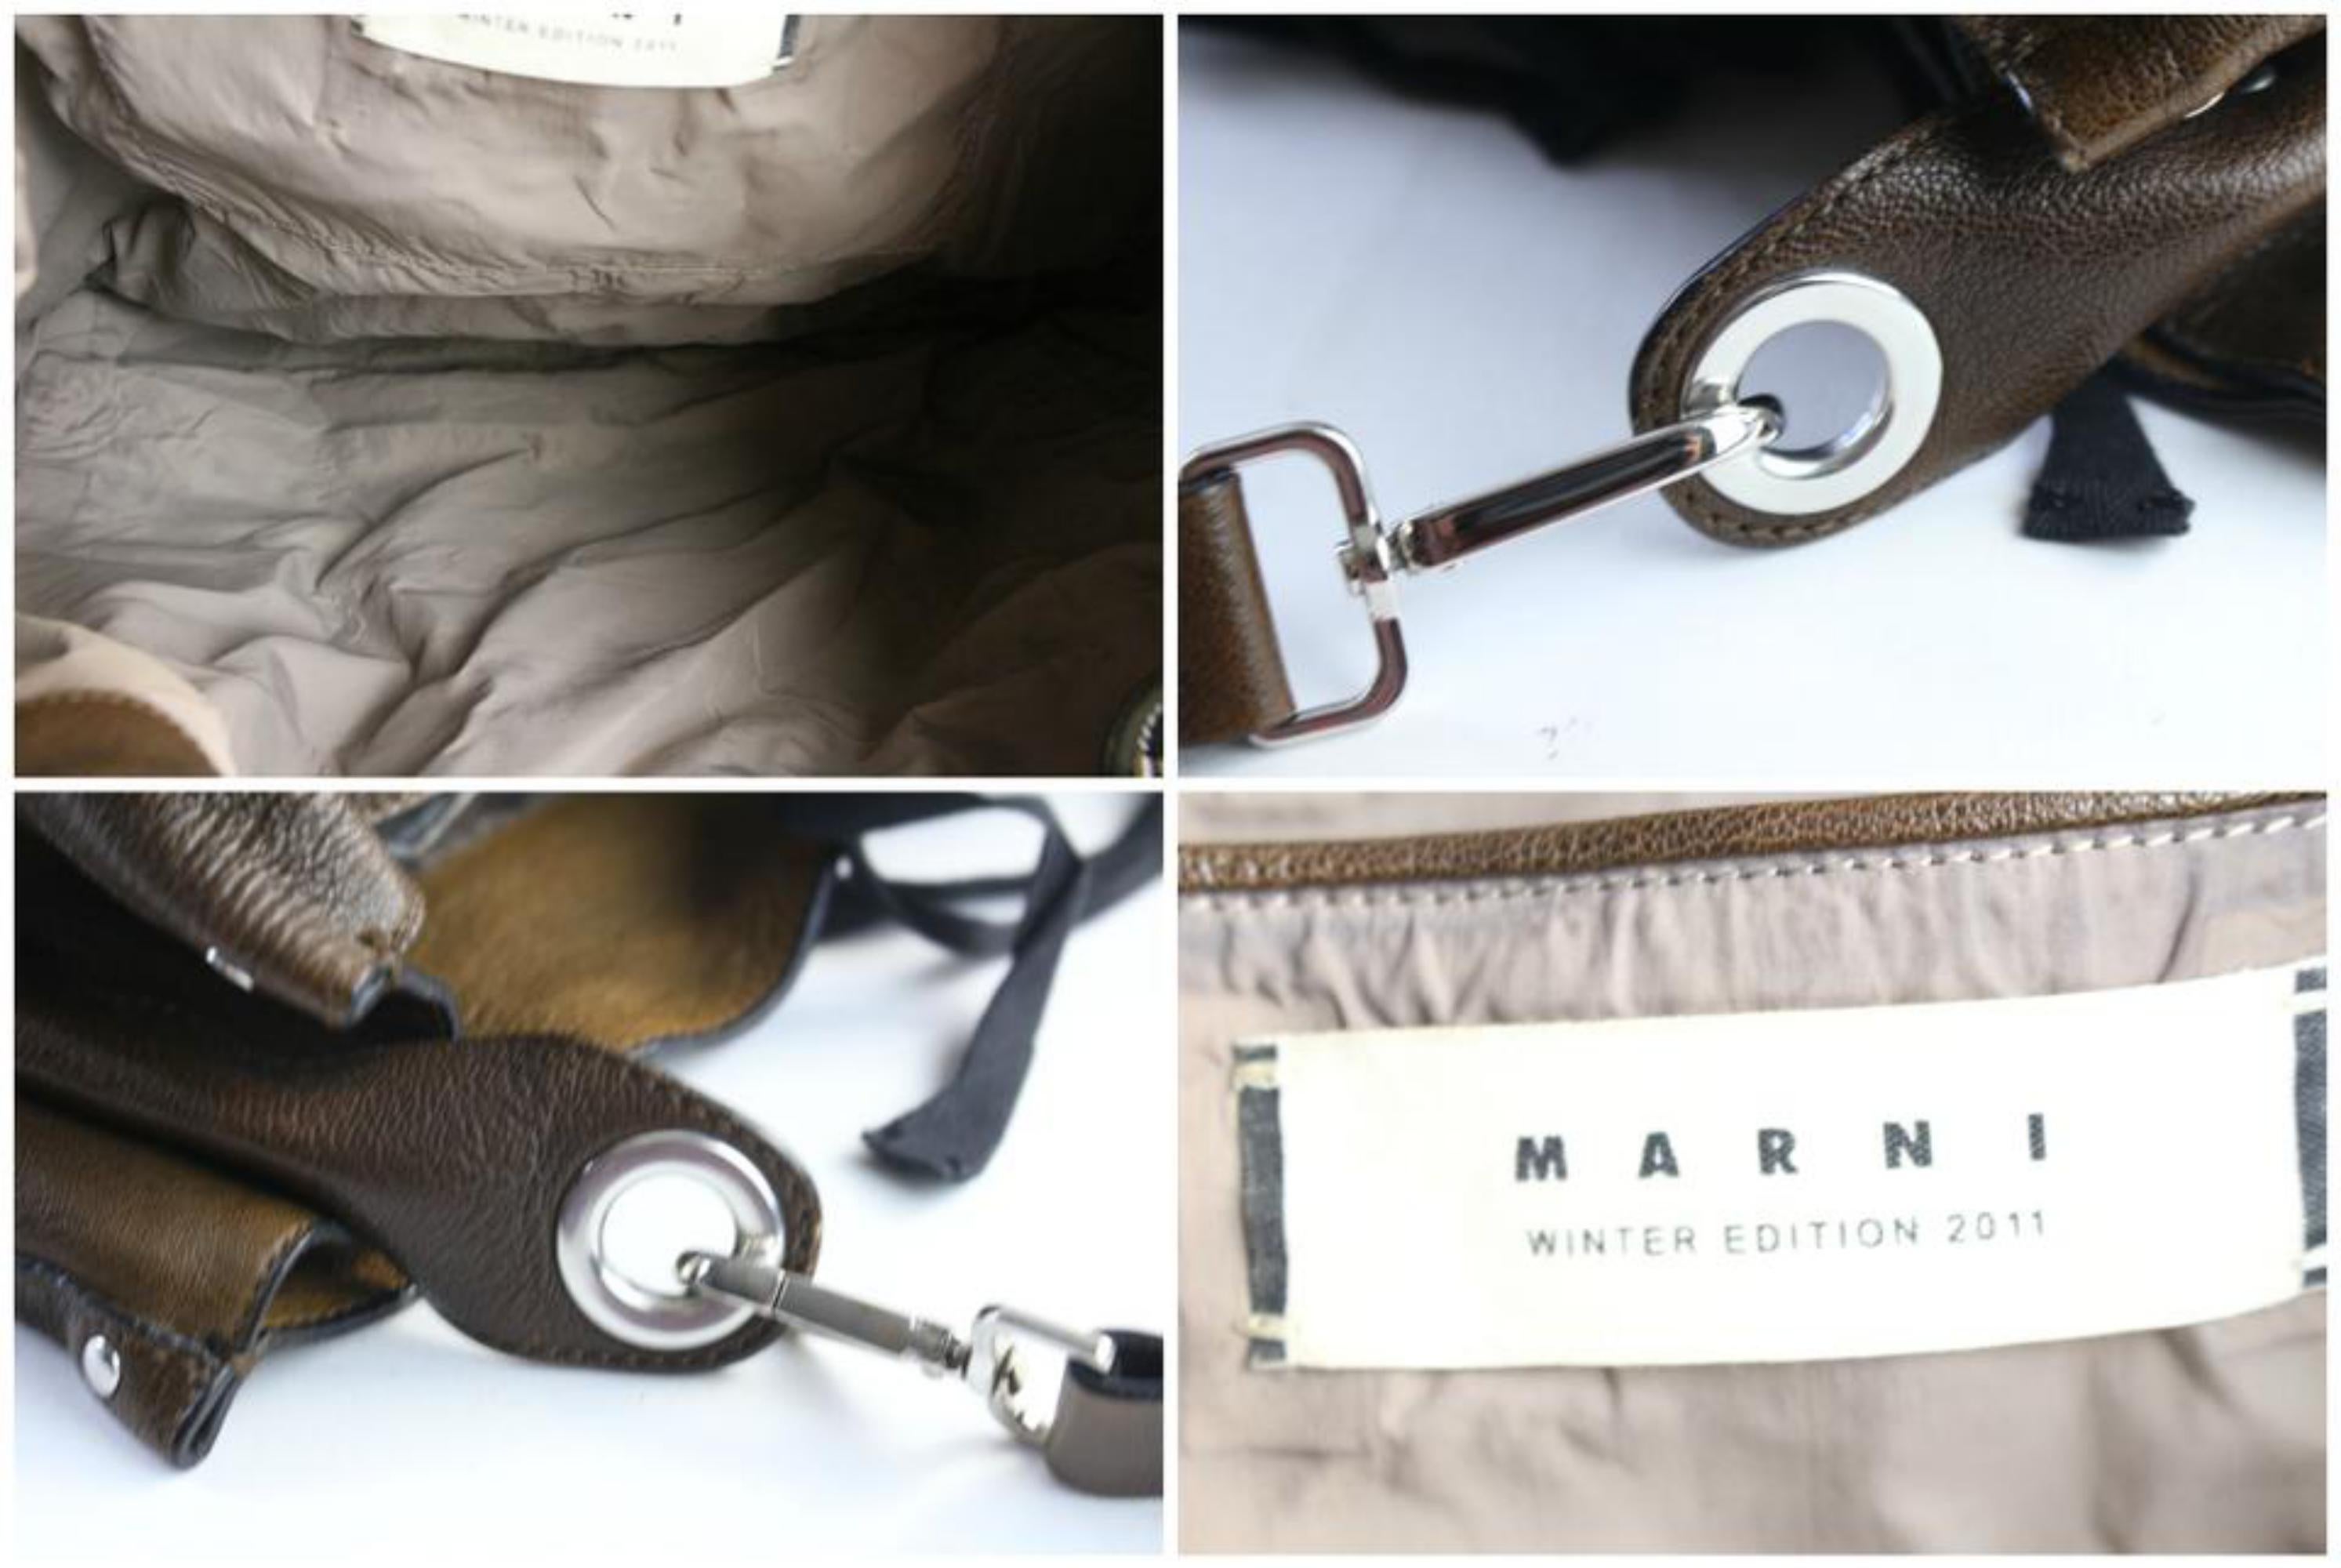 Gray Marni Hobo 2011 Limited Studded 7mr0628 Brown Leather Shoulder Bag For Sale